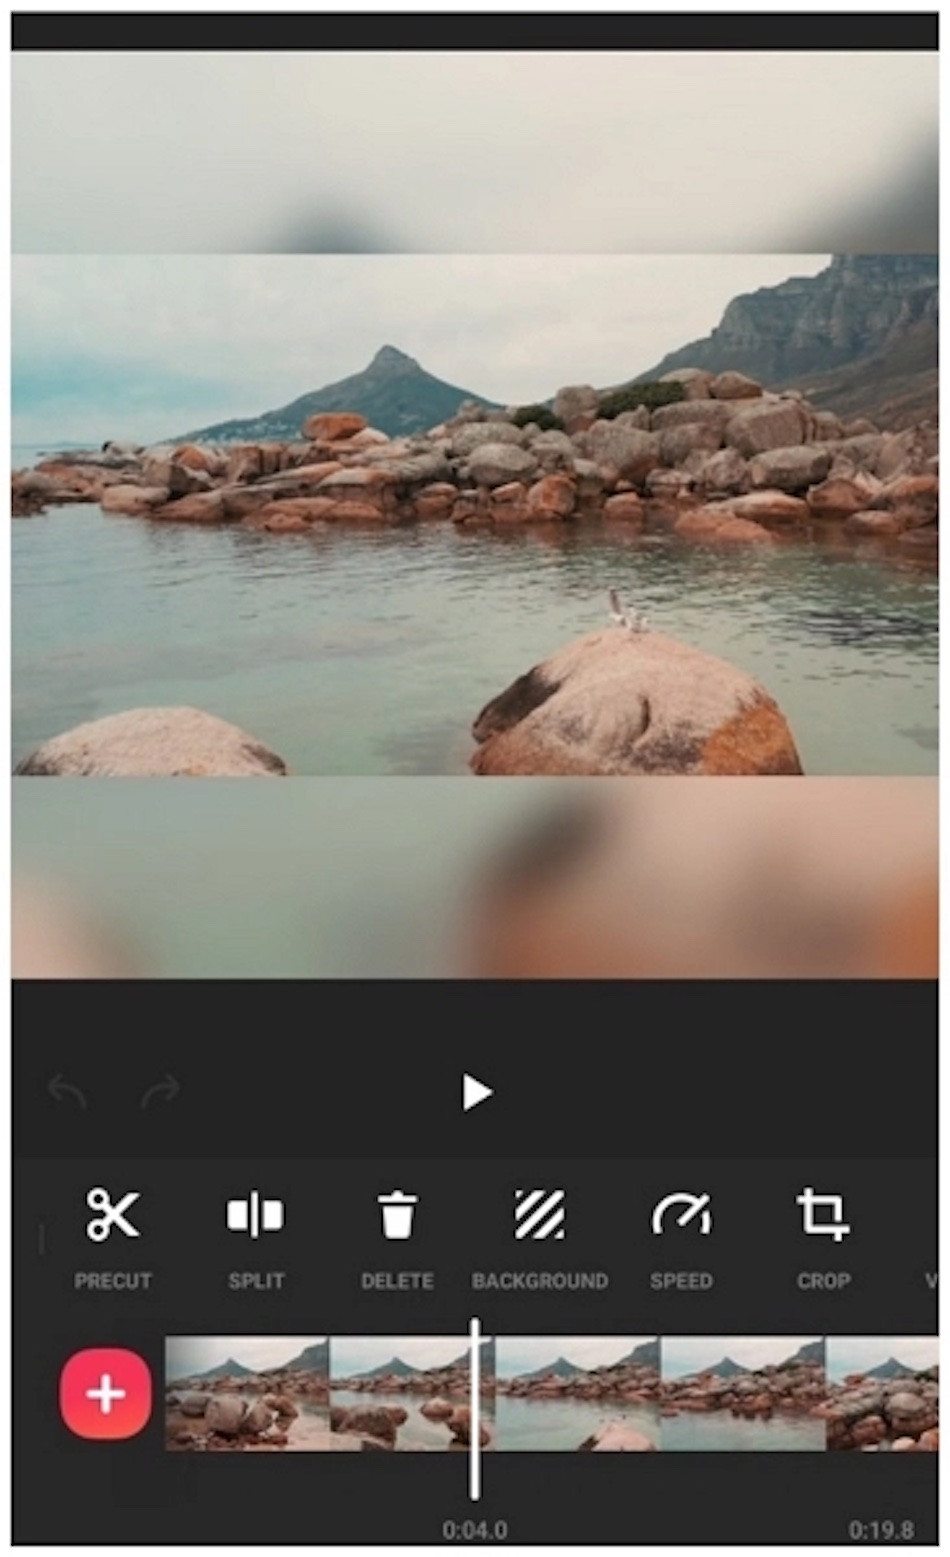 L'interface de l'application de montage vidéo InShot affiche une scène de plage et des commandes d'édition.